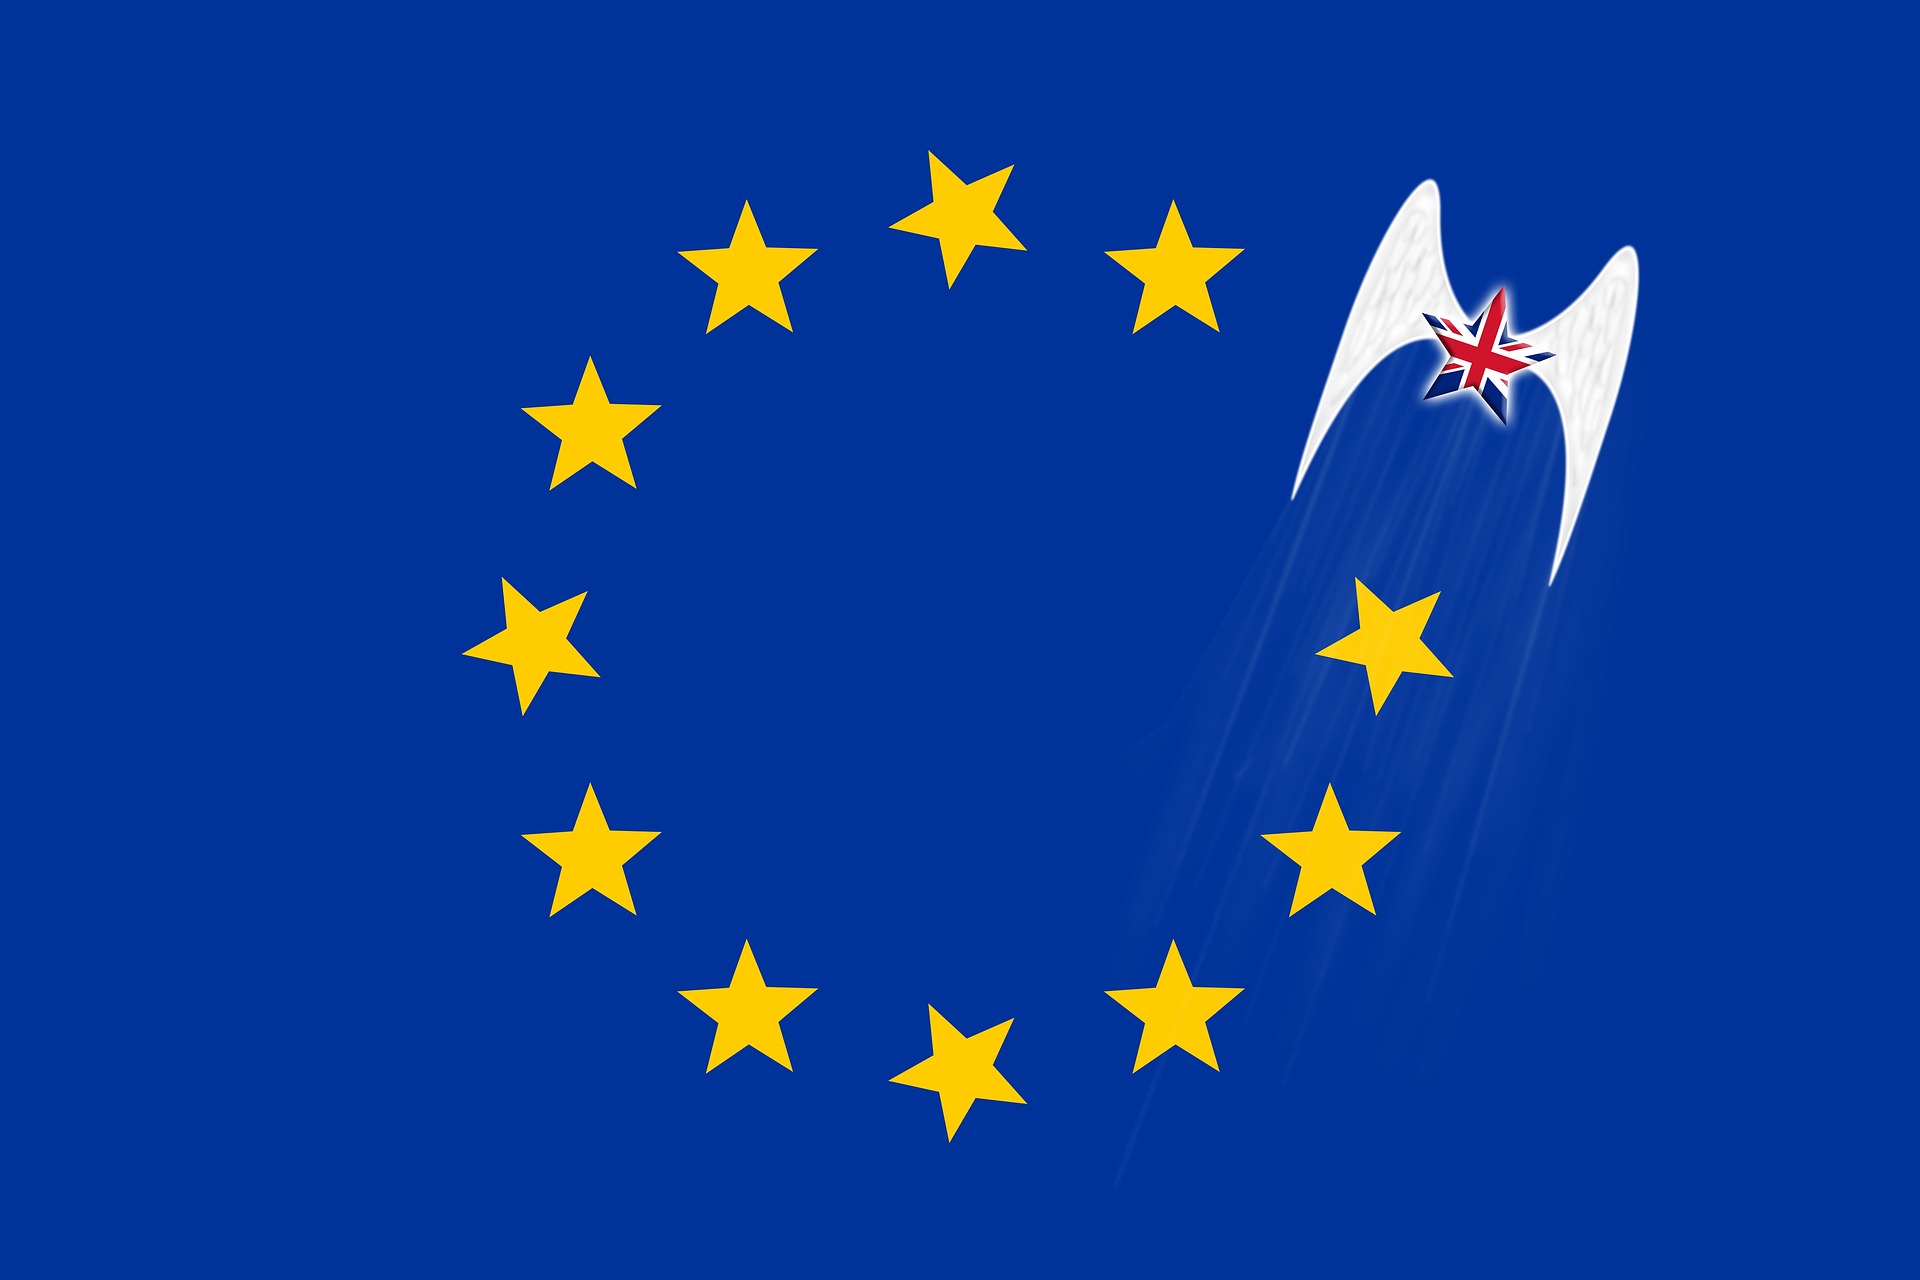  UE i Wielka Brytania uzgodniły warunki współpr